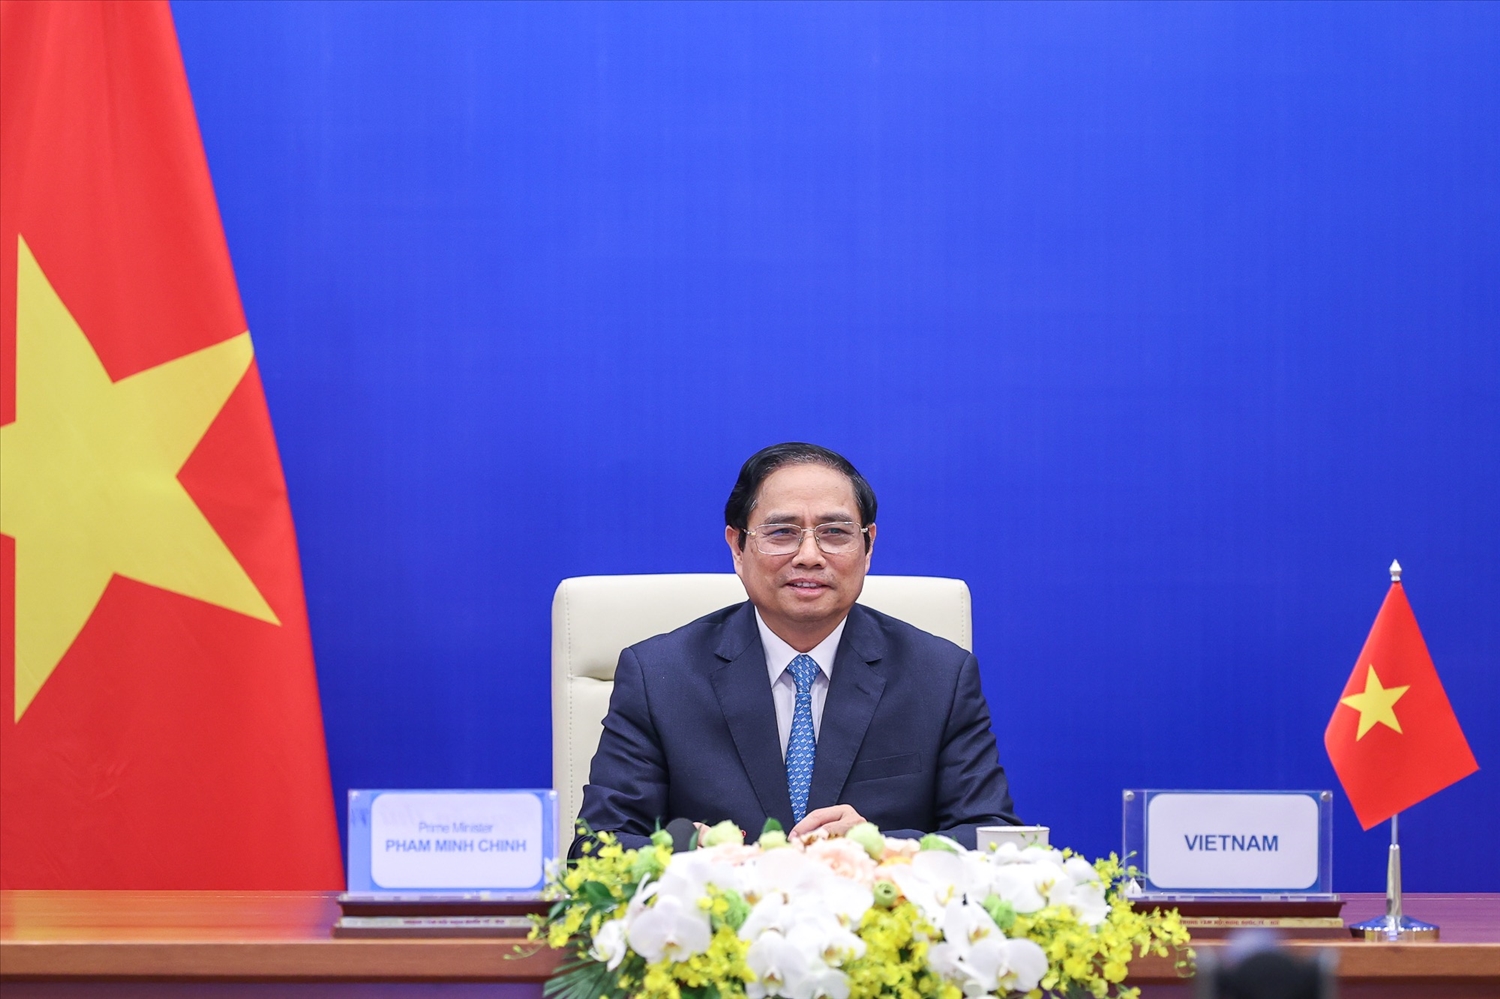 Thủ tướng Chính phủ Phạm Minh Chính tham dự và phát biểu trực tuyến tại Hội nghị Thượng đỉnh lần thứ 4 khu vực châu Á-Thái Bình Dương về Nước. Ảnh: VGP/Nhật Bắc